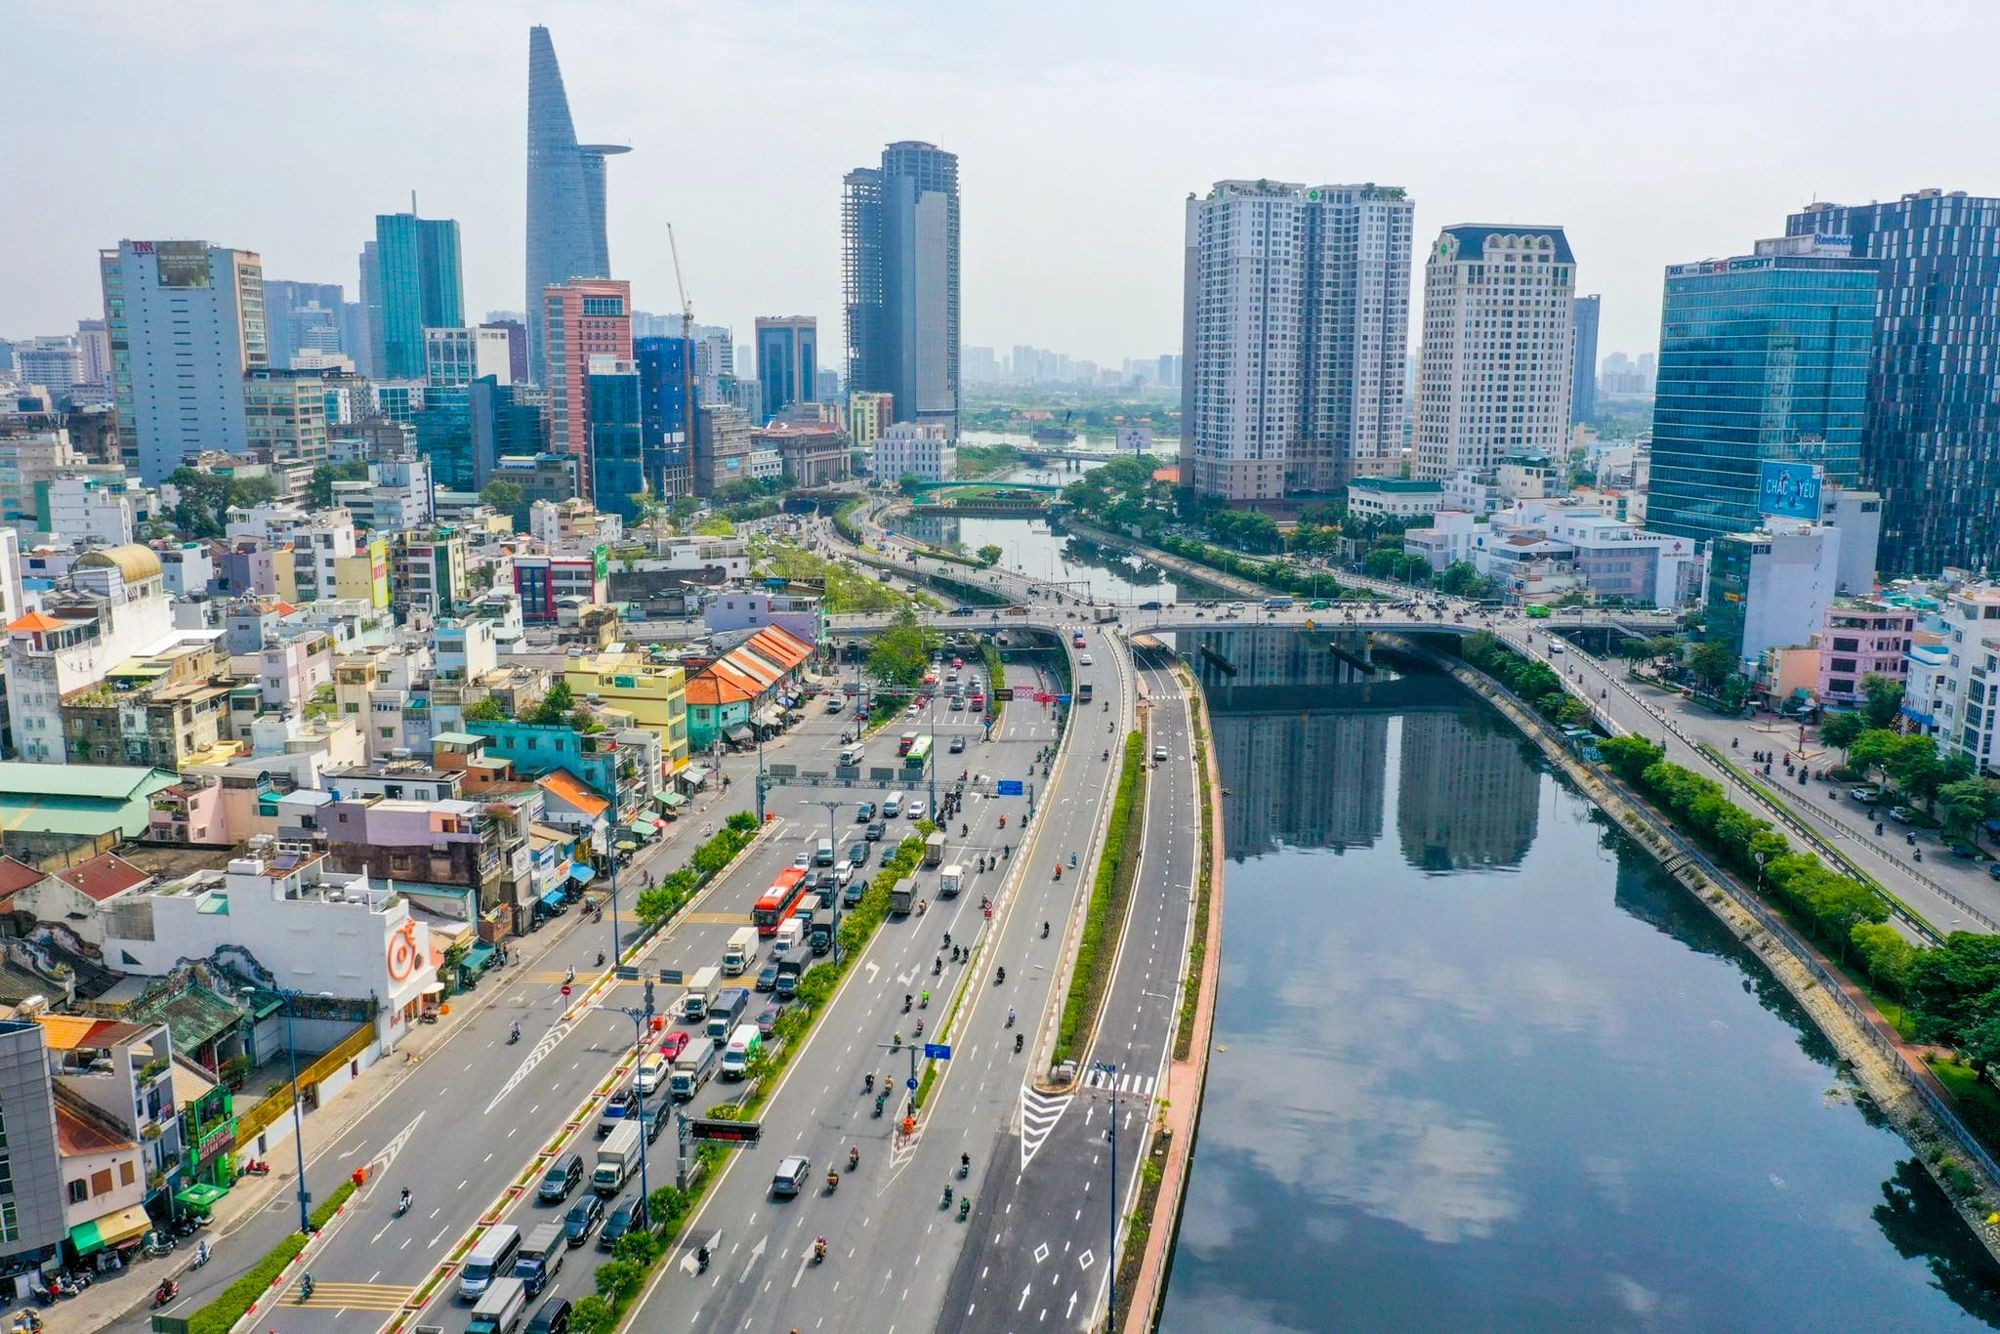 
Mỗi m2 đất tại đường Đồng Khởi, Nguyễn Huệ, Lê Duẩn, Ngô Đức Kế… lên tới hàng tỷ đồng
